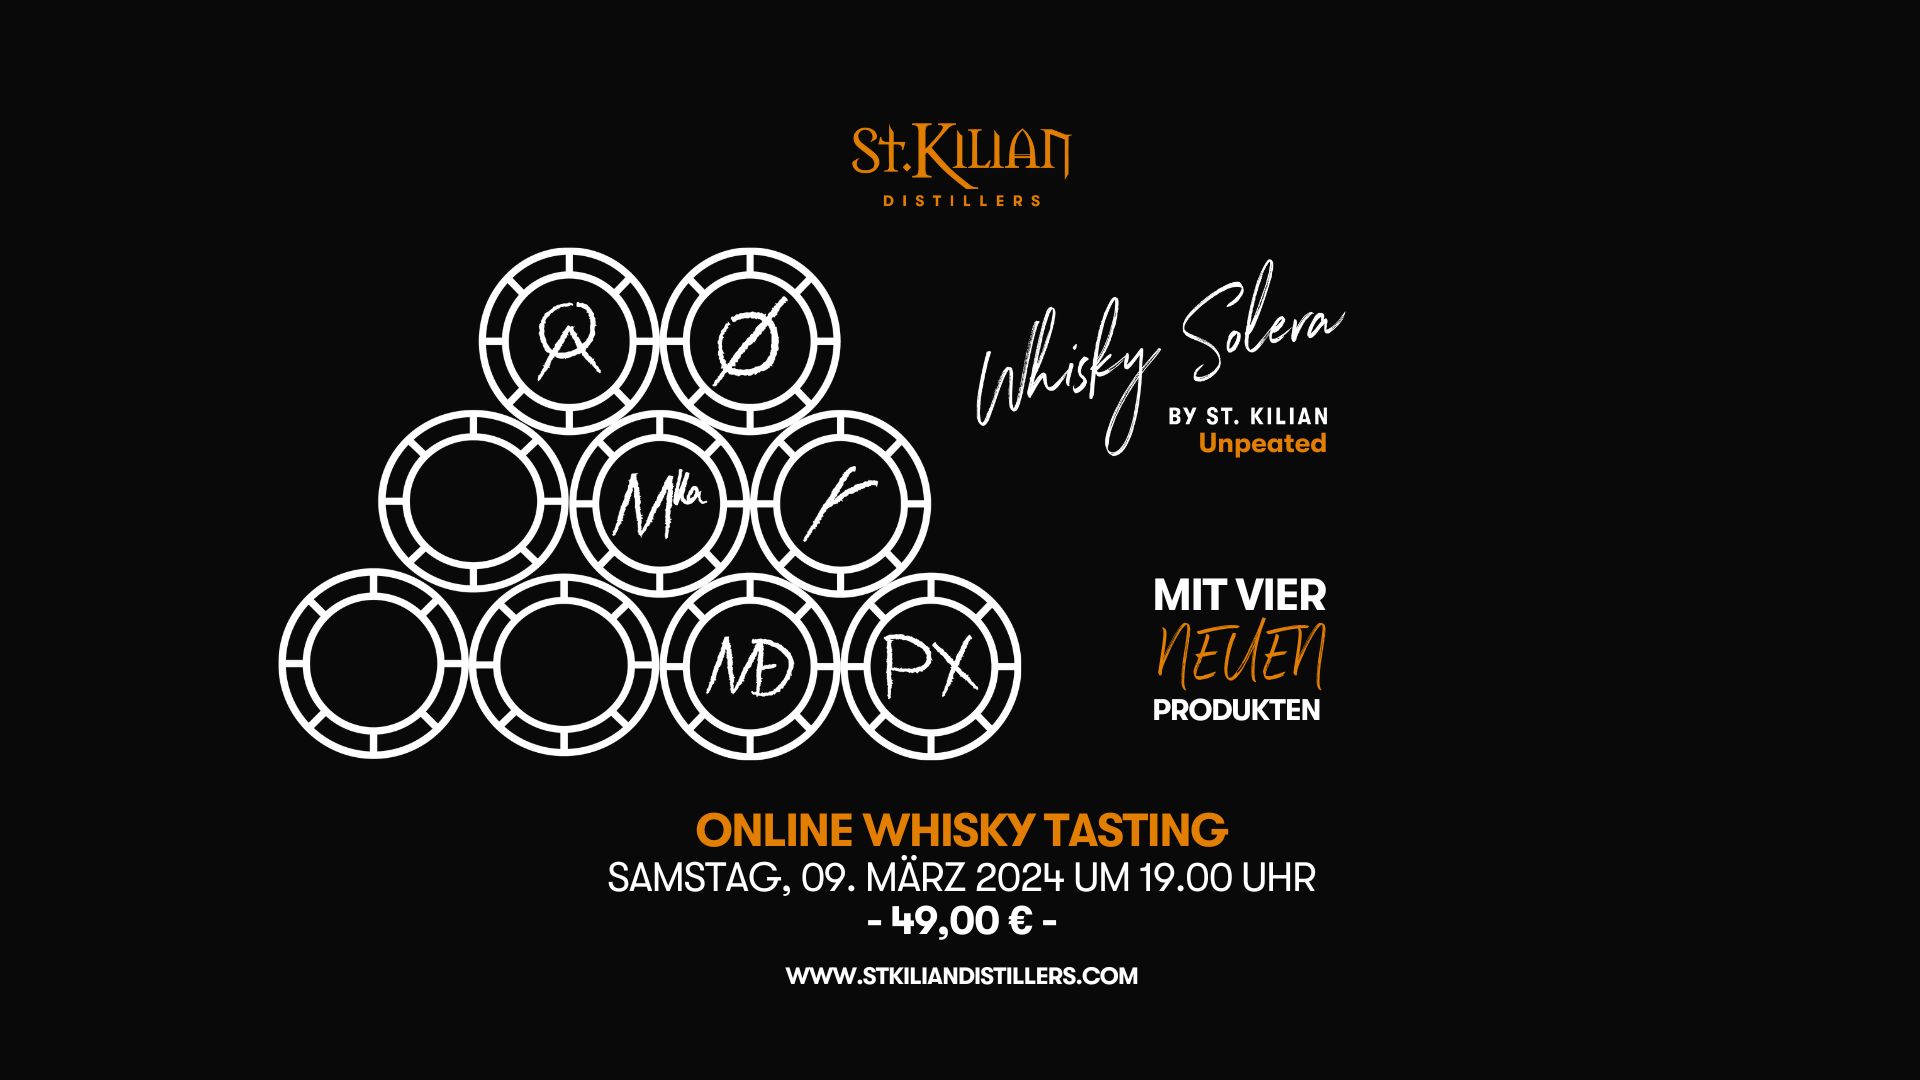 St. Kilian Online Whisky Tasting on 09.03.